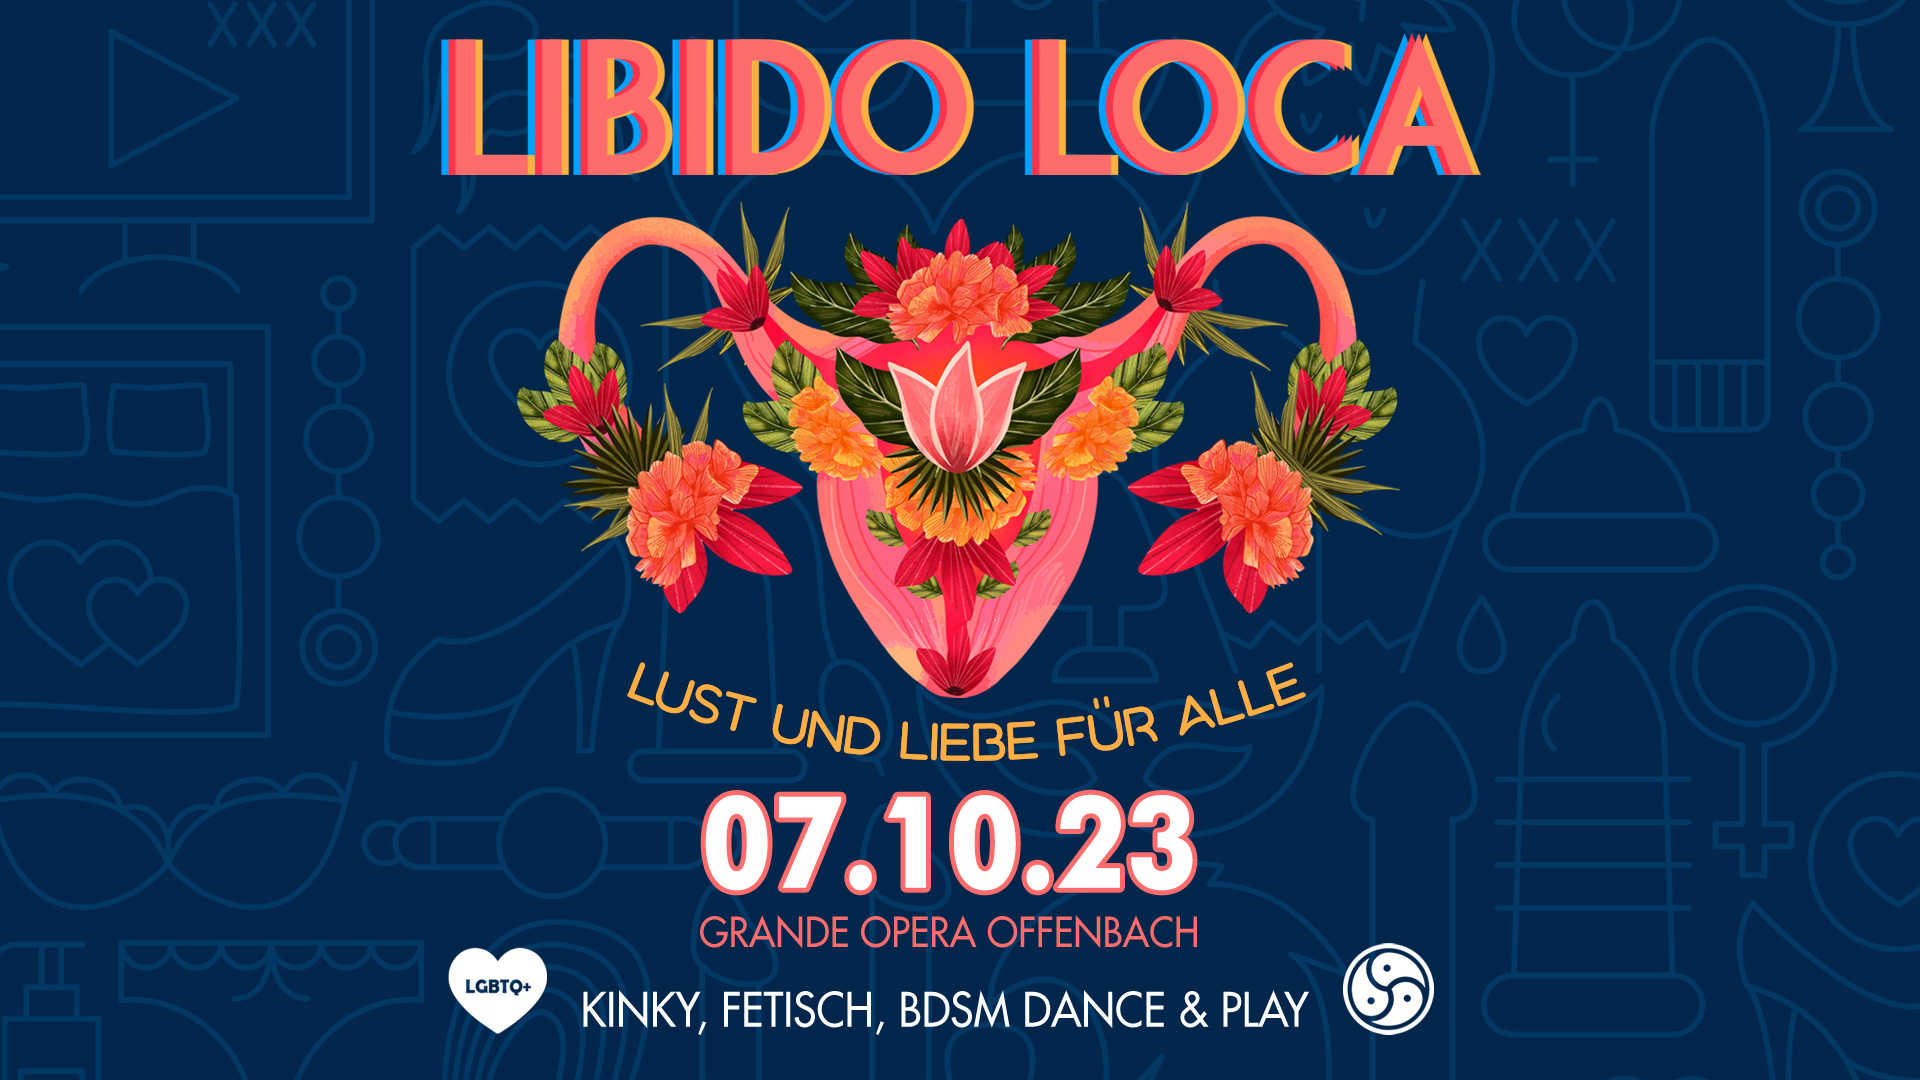 LIBIDO LOCA » Die verrückte Libido! Die fruchtig-frische Kinky, Fetisch und BDSM Dance & Play Party in der Grande Opera (Offenbach) mit DJ GILLIAN.